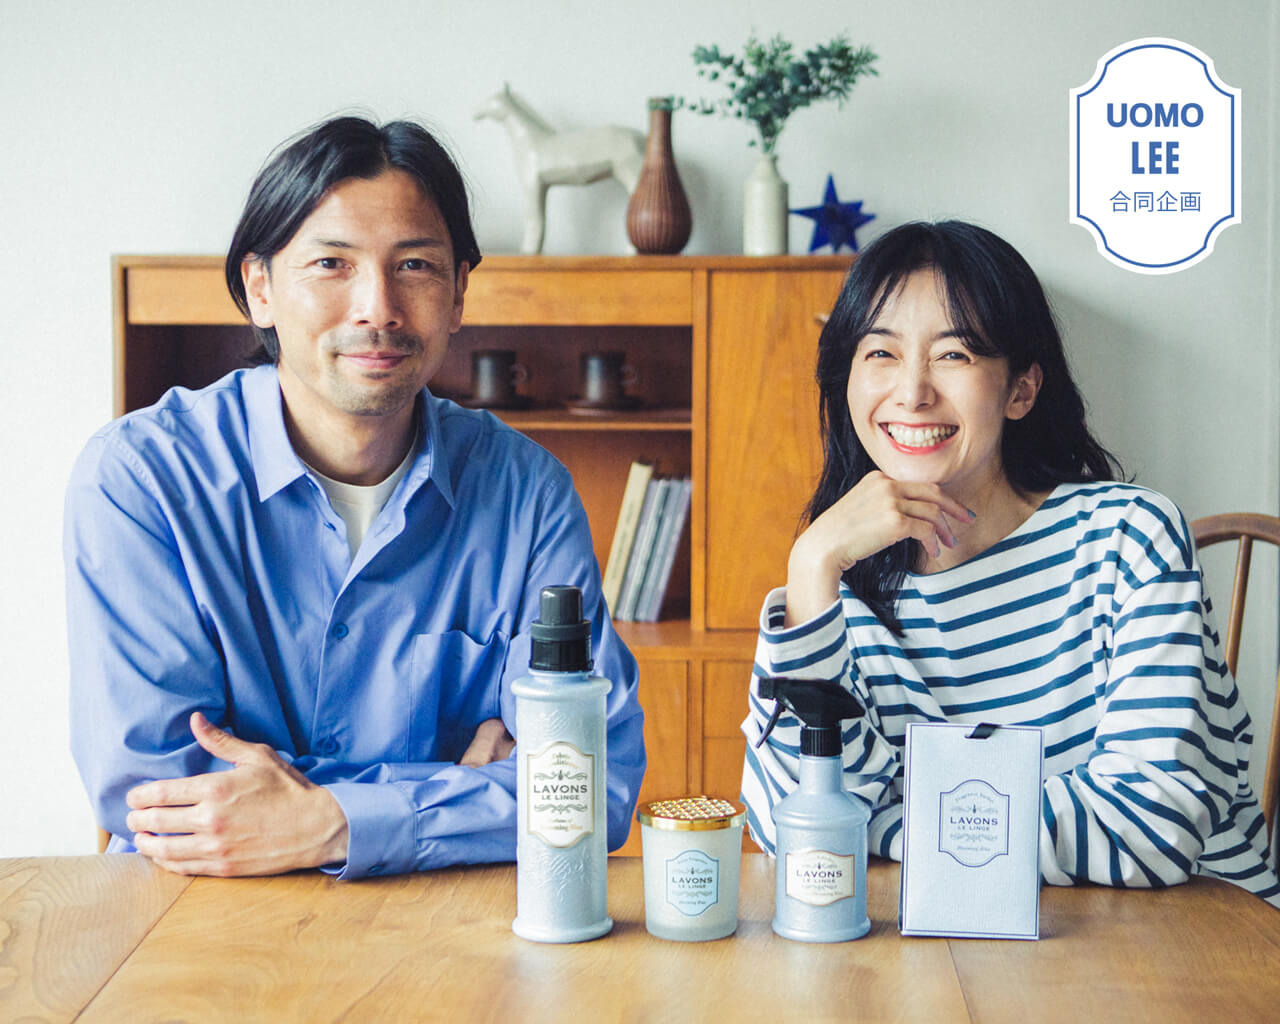 橋本優子さん・鈴木隆行さん夫妻に聞きました！家族みんなが心地よく過ごせる「おうちの香り問題」どうしてる？